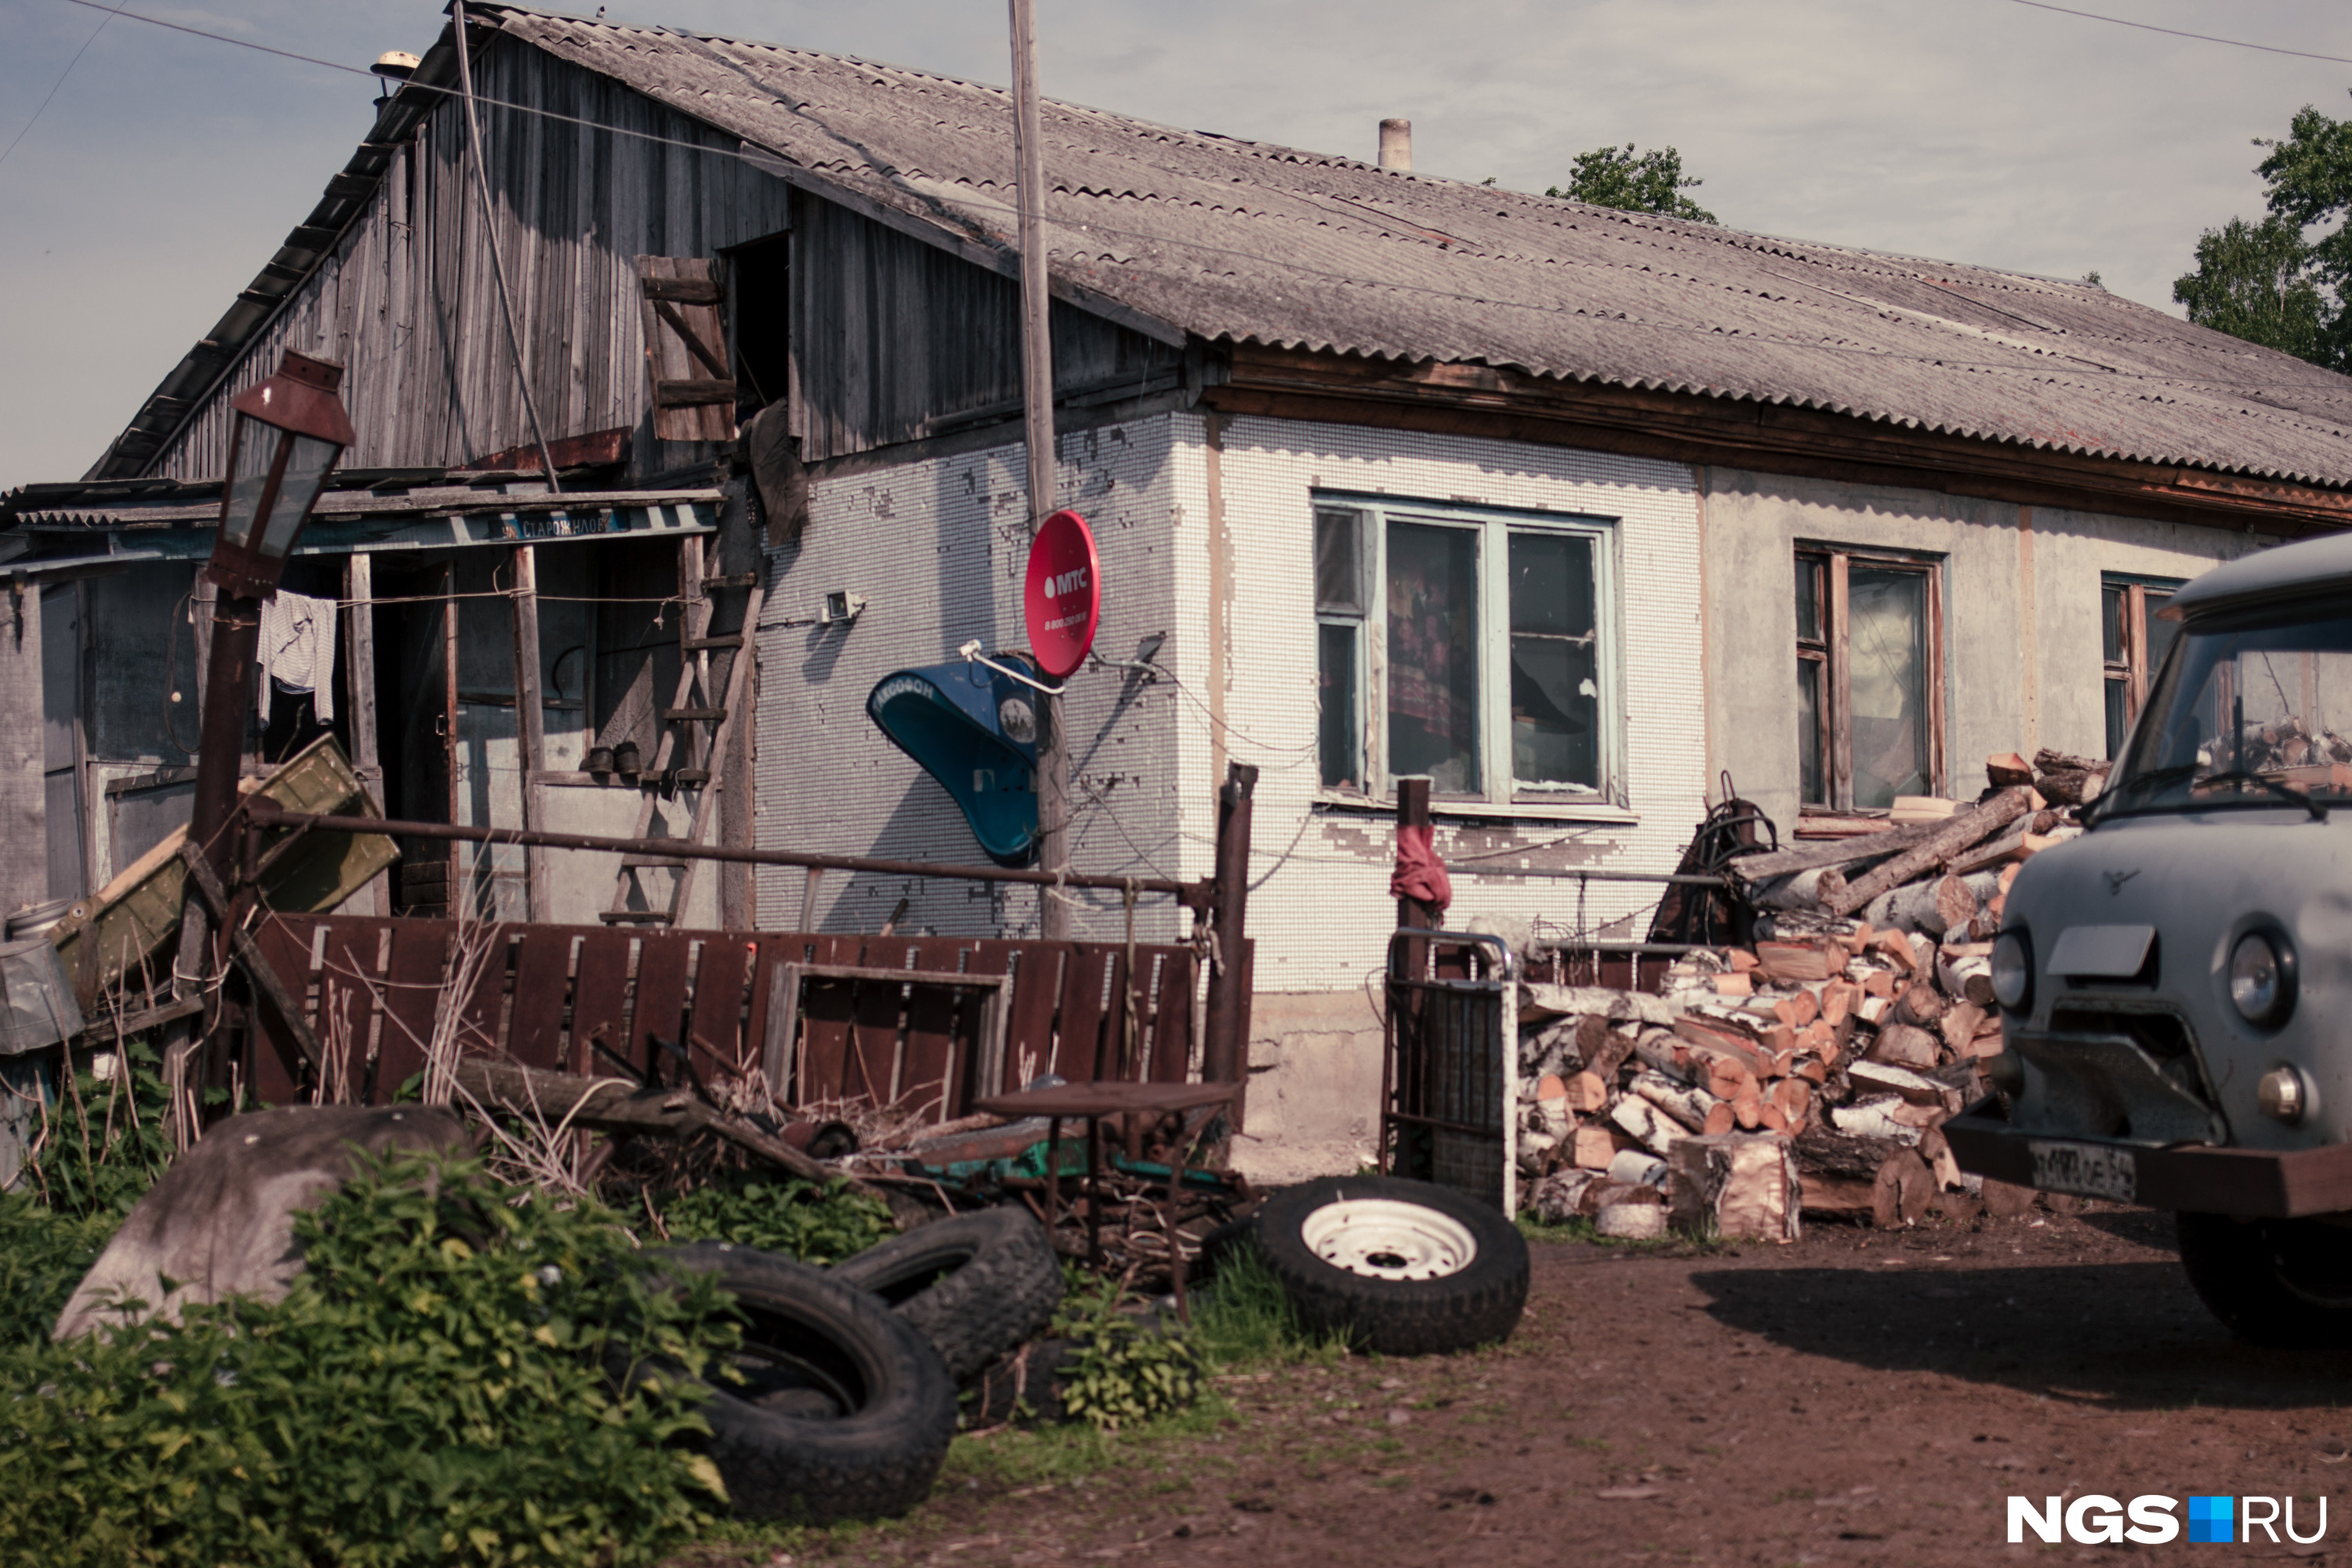 Семья Леонида переехала в Скалу несколько лет назад. Сам мужчина живет во Вдовино в одиночку уже около пяти лет